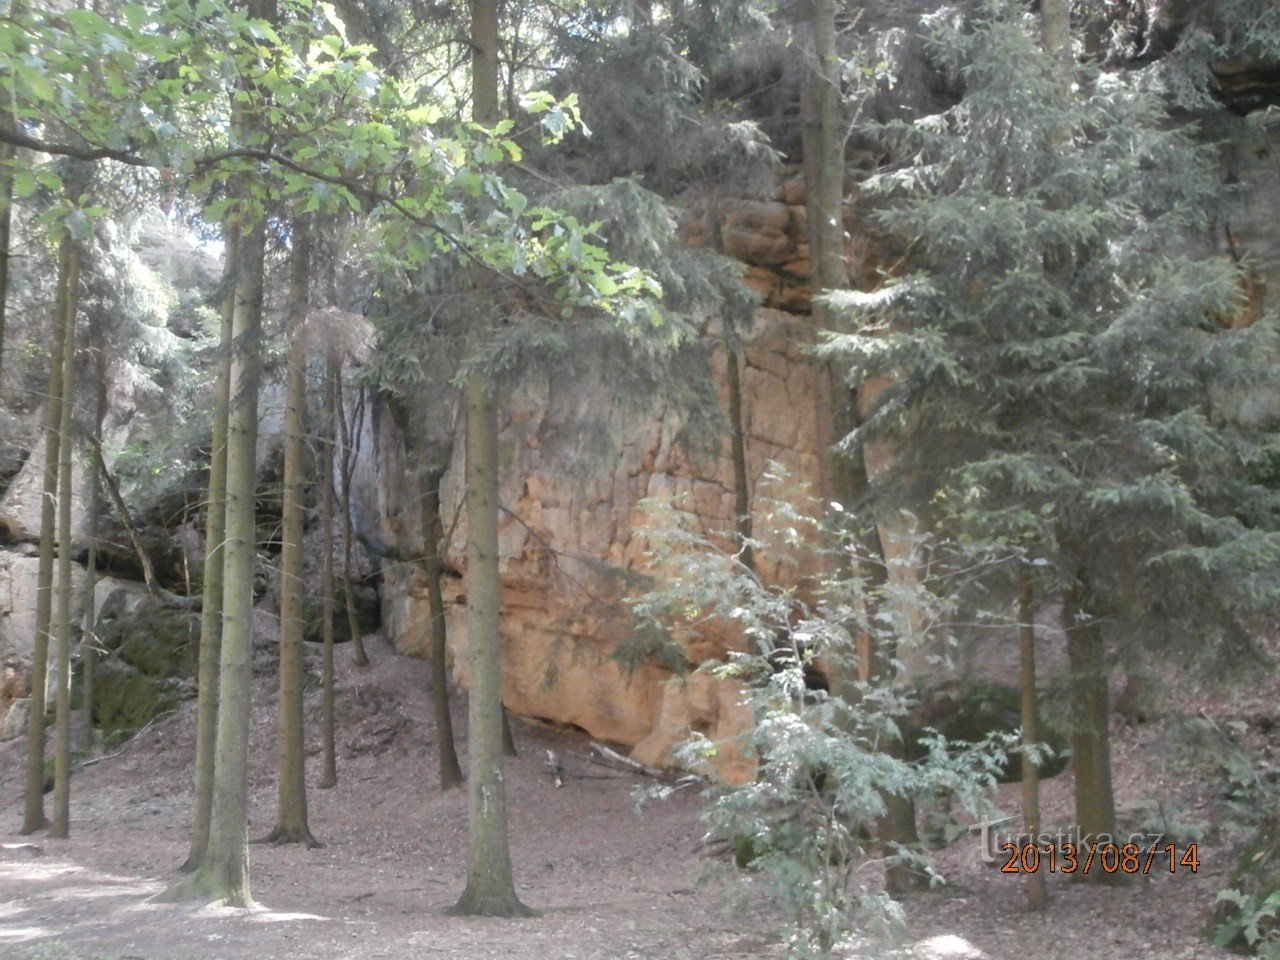 Βράχοι Bohemian Paradise-Borecké, Rovensko pod Troskami